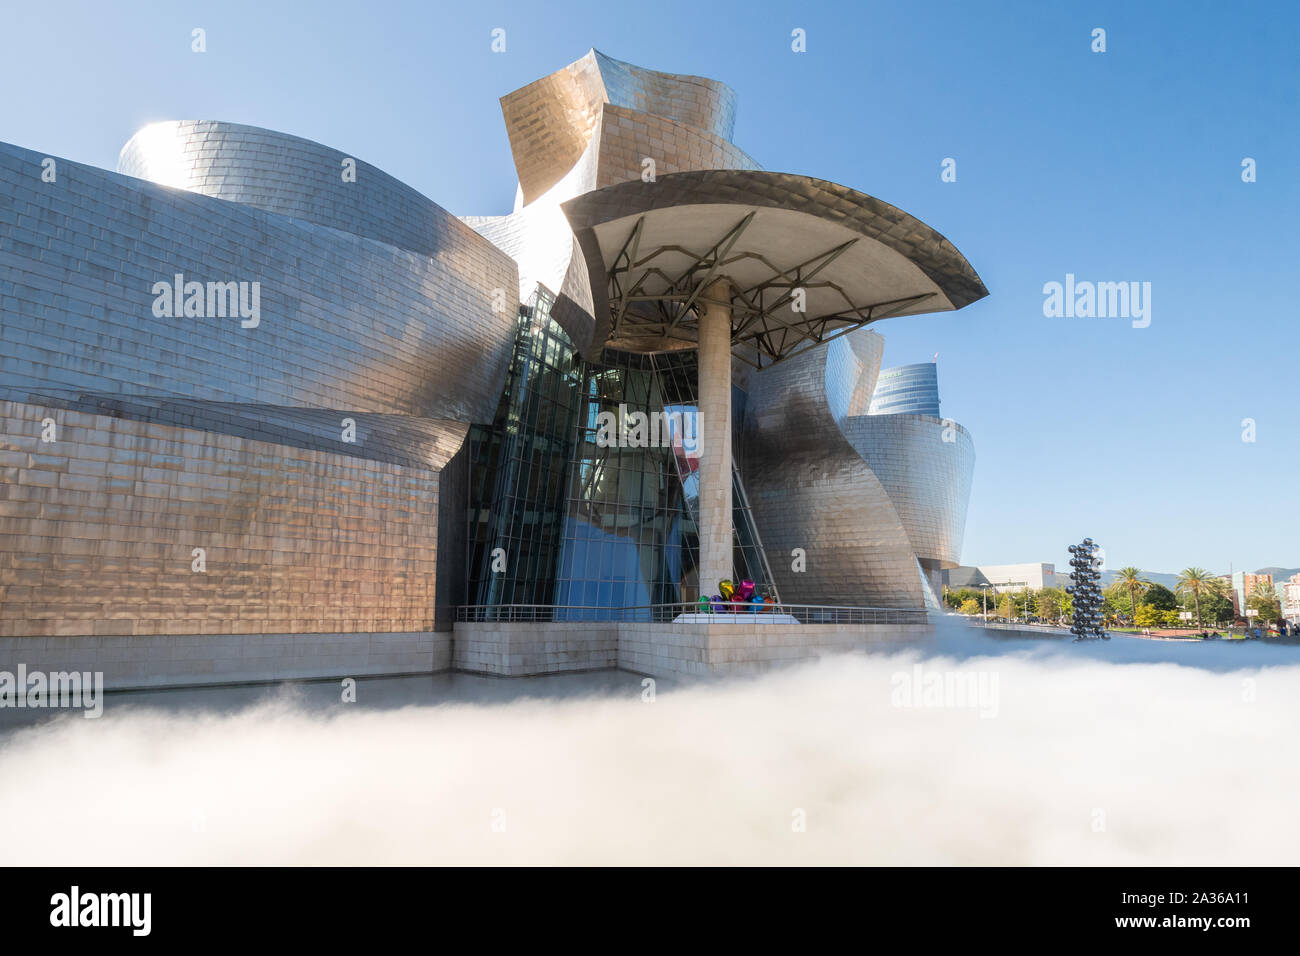 Guggenheim Museum and Fujiko Nakaya's fog sculpture, Bilbao, Northern Spain, Europe Stock Photo